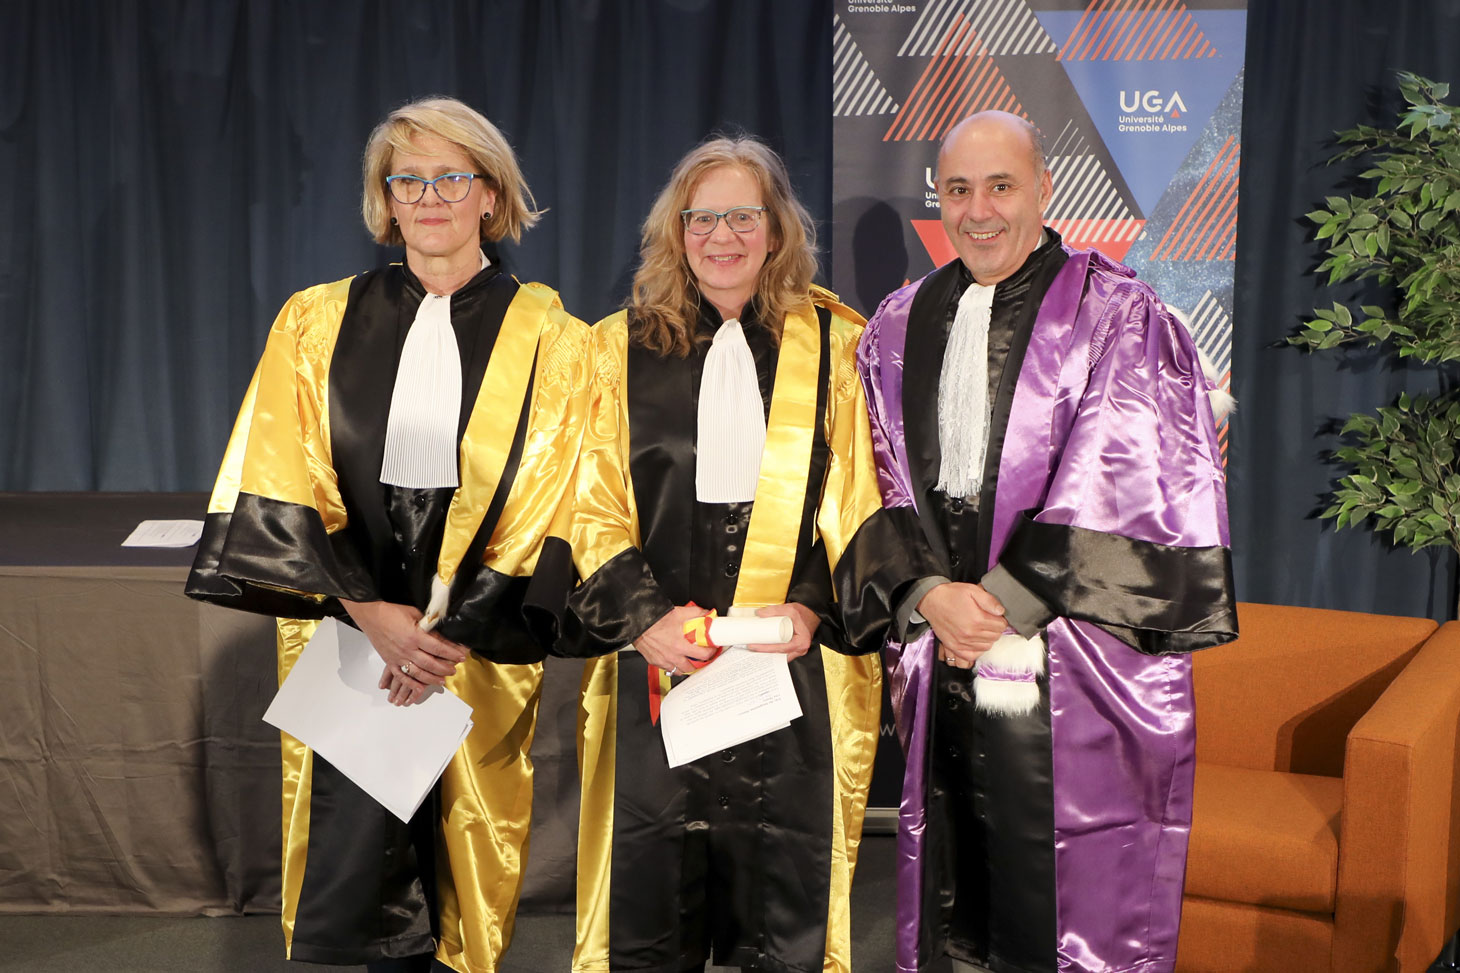 Lisa Moore entourée de sa marraine, Gretchen Schiller et du président de l’UGA